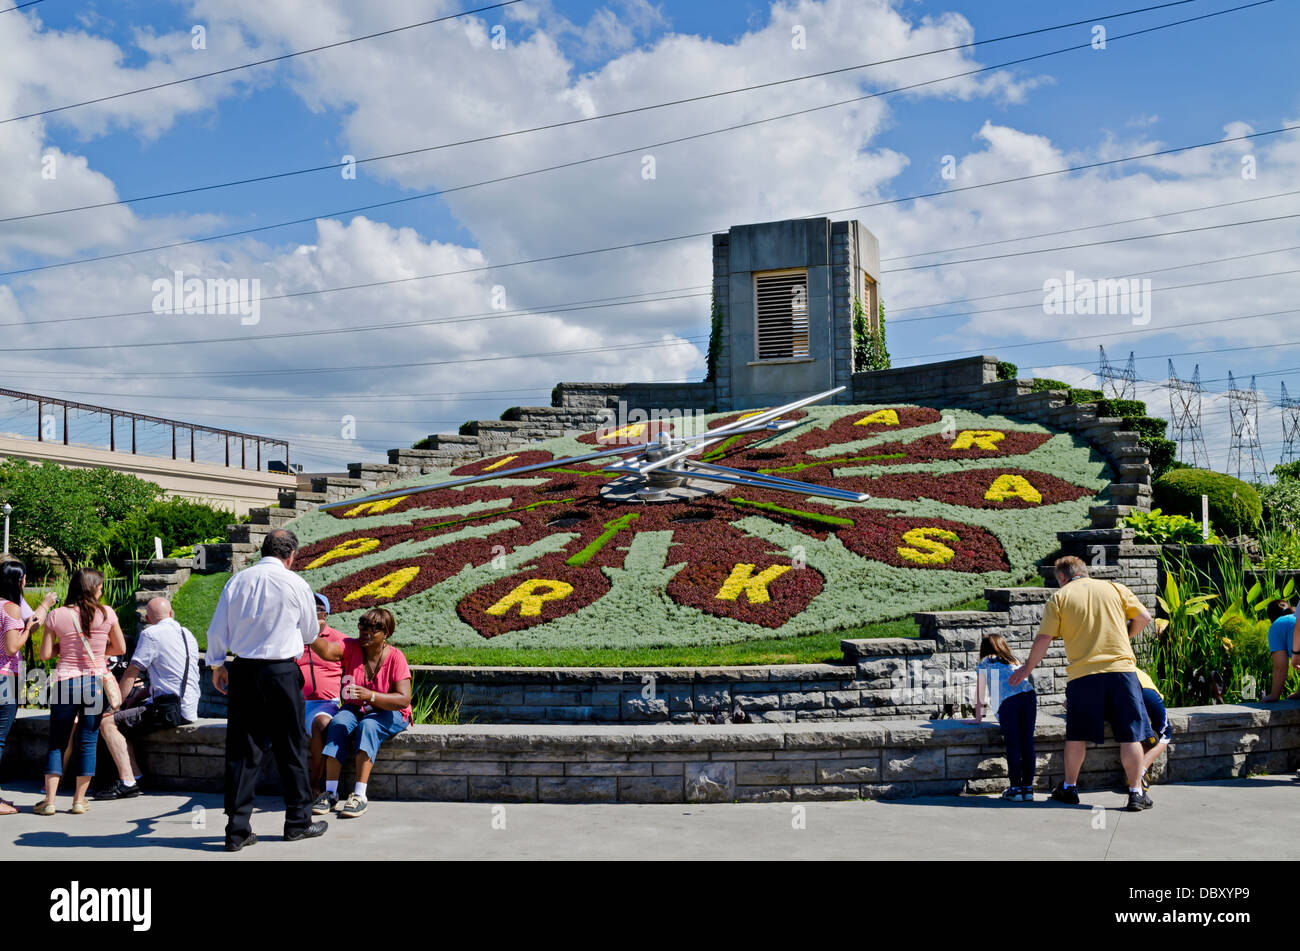 Besucher der Niagara-Region nicht mehr um zu sehen, die Blumenuhr, eine schöne Arbeit Zeitmesser aus Tausenden von gepflanzten Blumen gemacht. Stockfoto